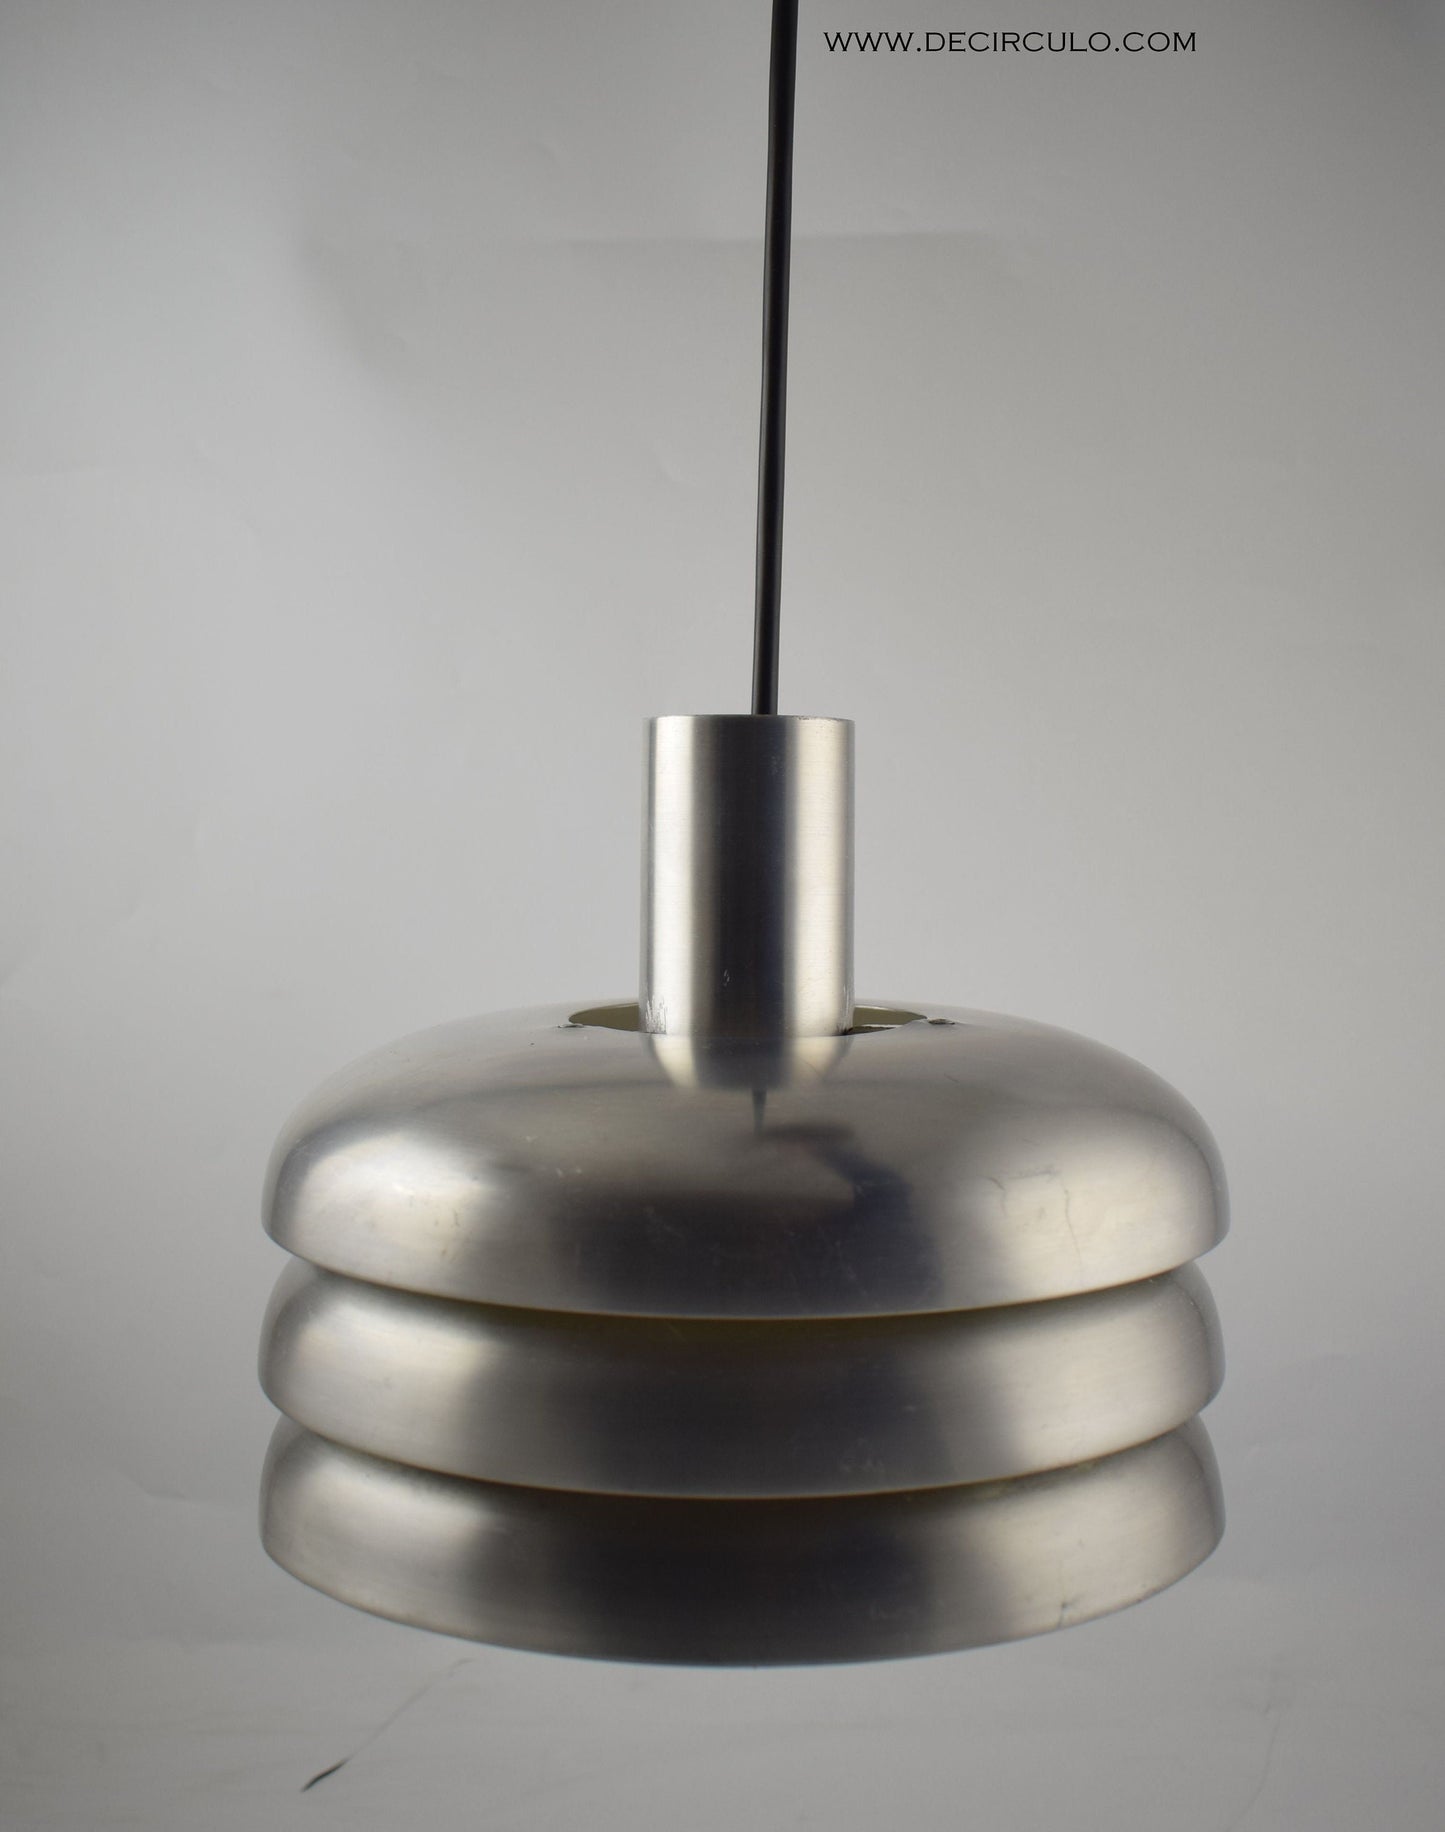 Lámpara colgante Hans Agne Jakobsson T-724 para Markaryd, lámpara de diseño moderno sueco de aluminio